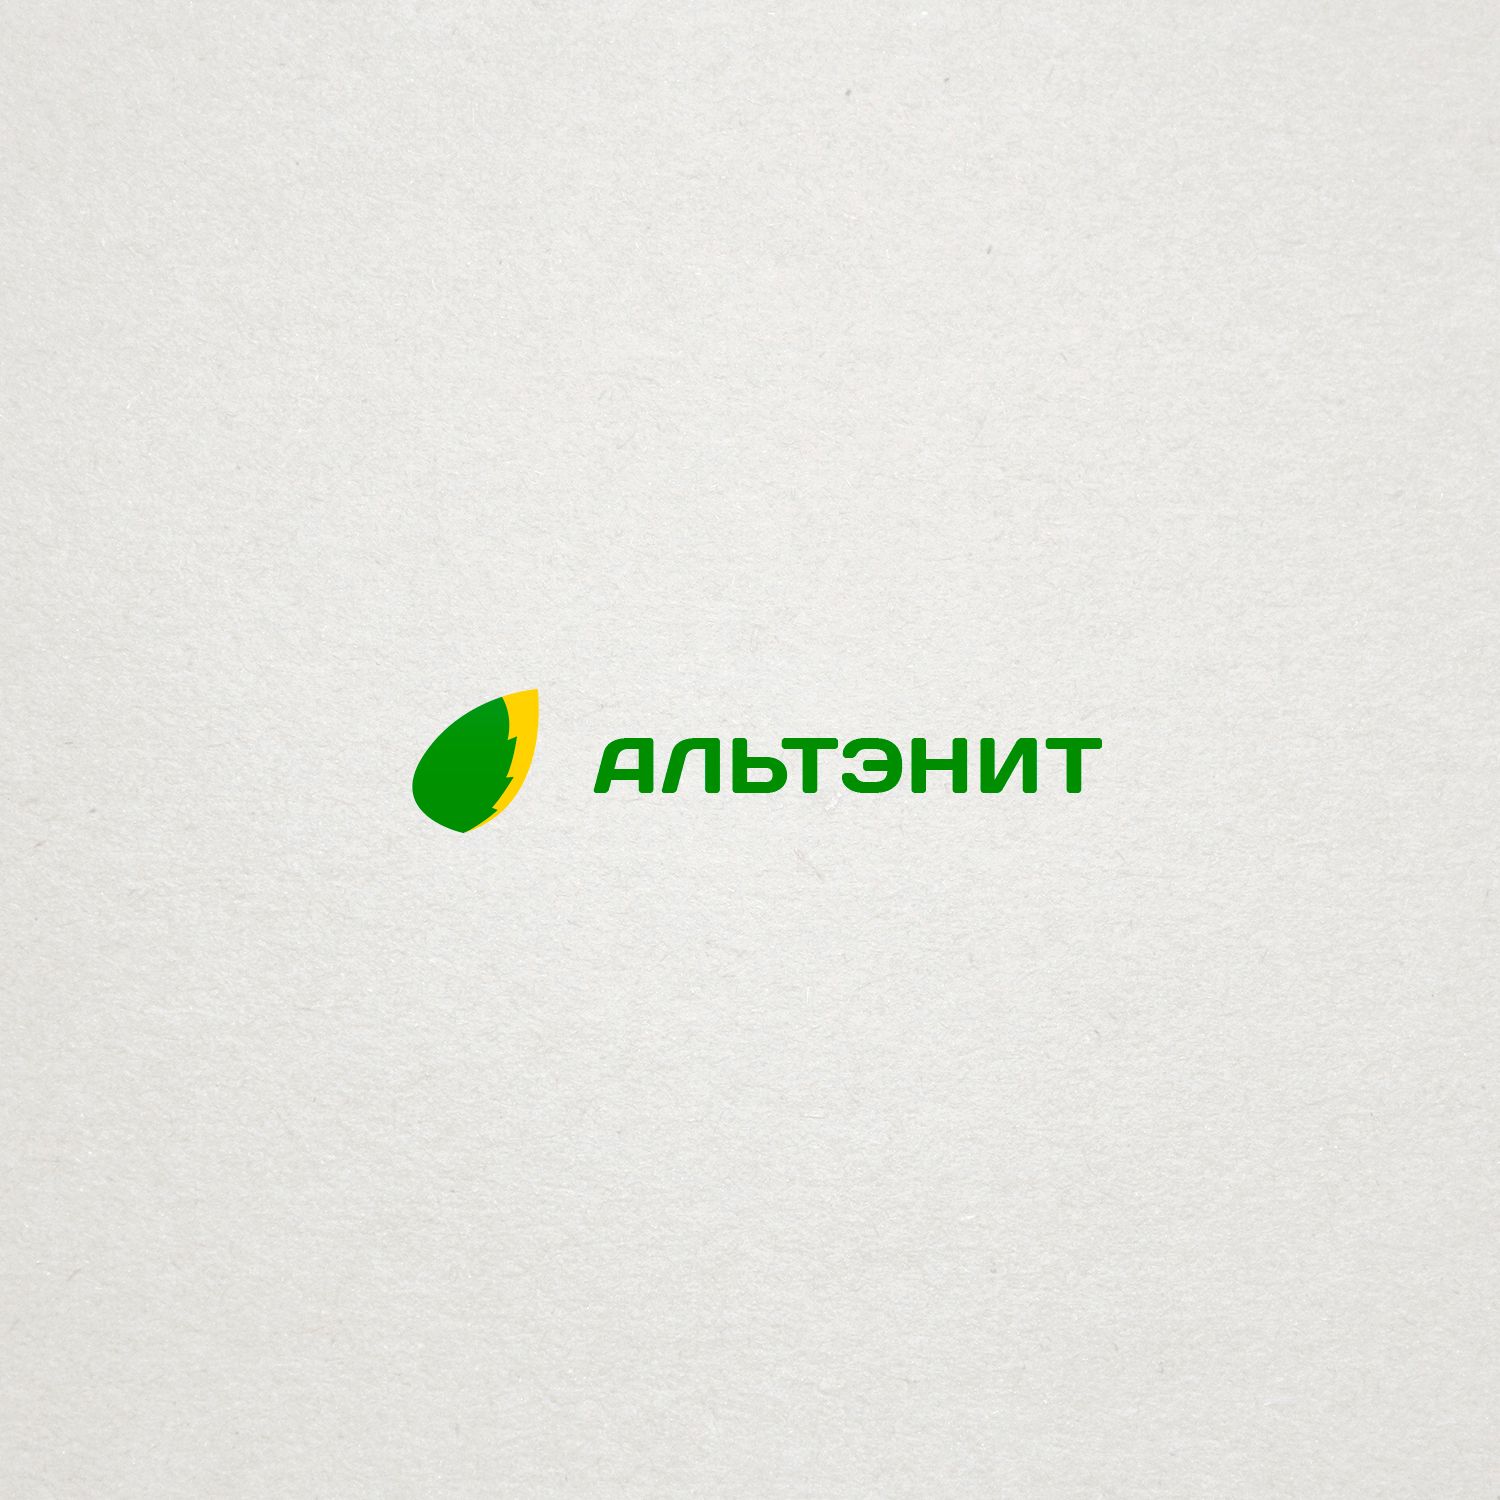 Логотип  для союза альтернативной энергетики - дизайнер epsylonart